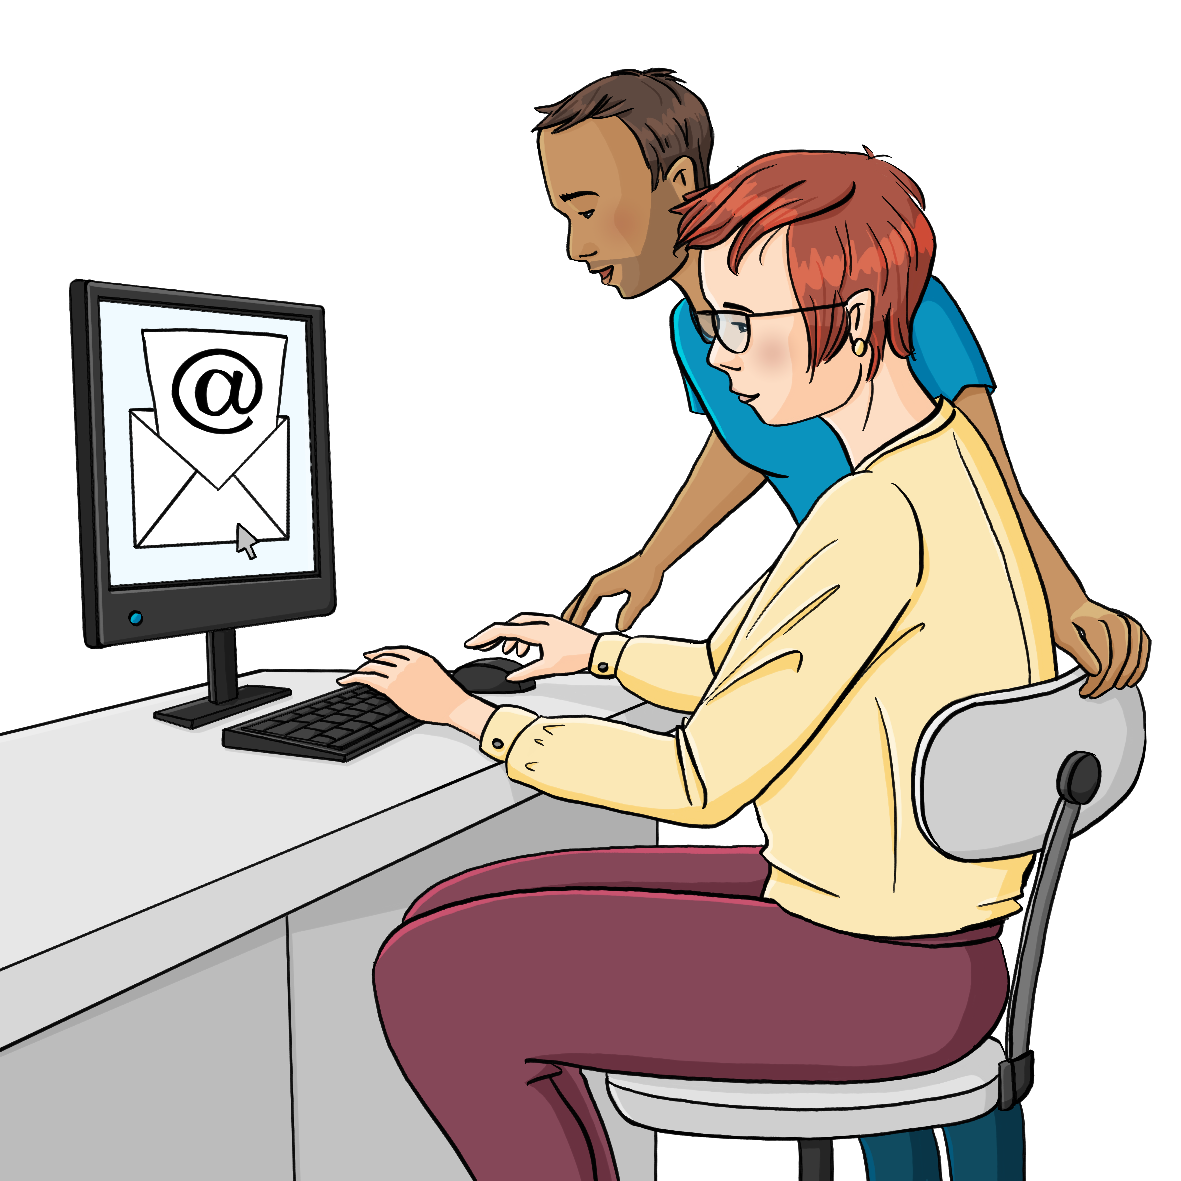 Eine Frau sitzt auf einem Schreibtischstuhl an einem Schreibtisch. Neben ihr steht ein Mann. Sie schauen auf einen Computer auf dem Schreibtisch. Auf dem Bildschirm ist ein Umschlag mit einem @-Zeichen.